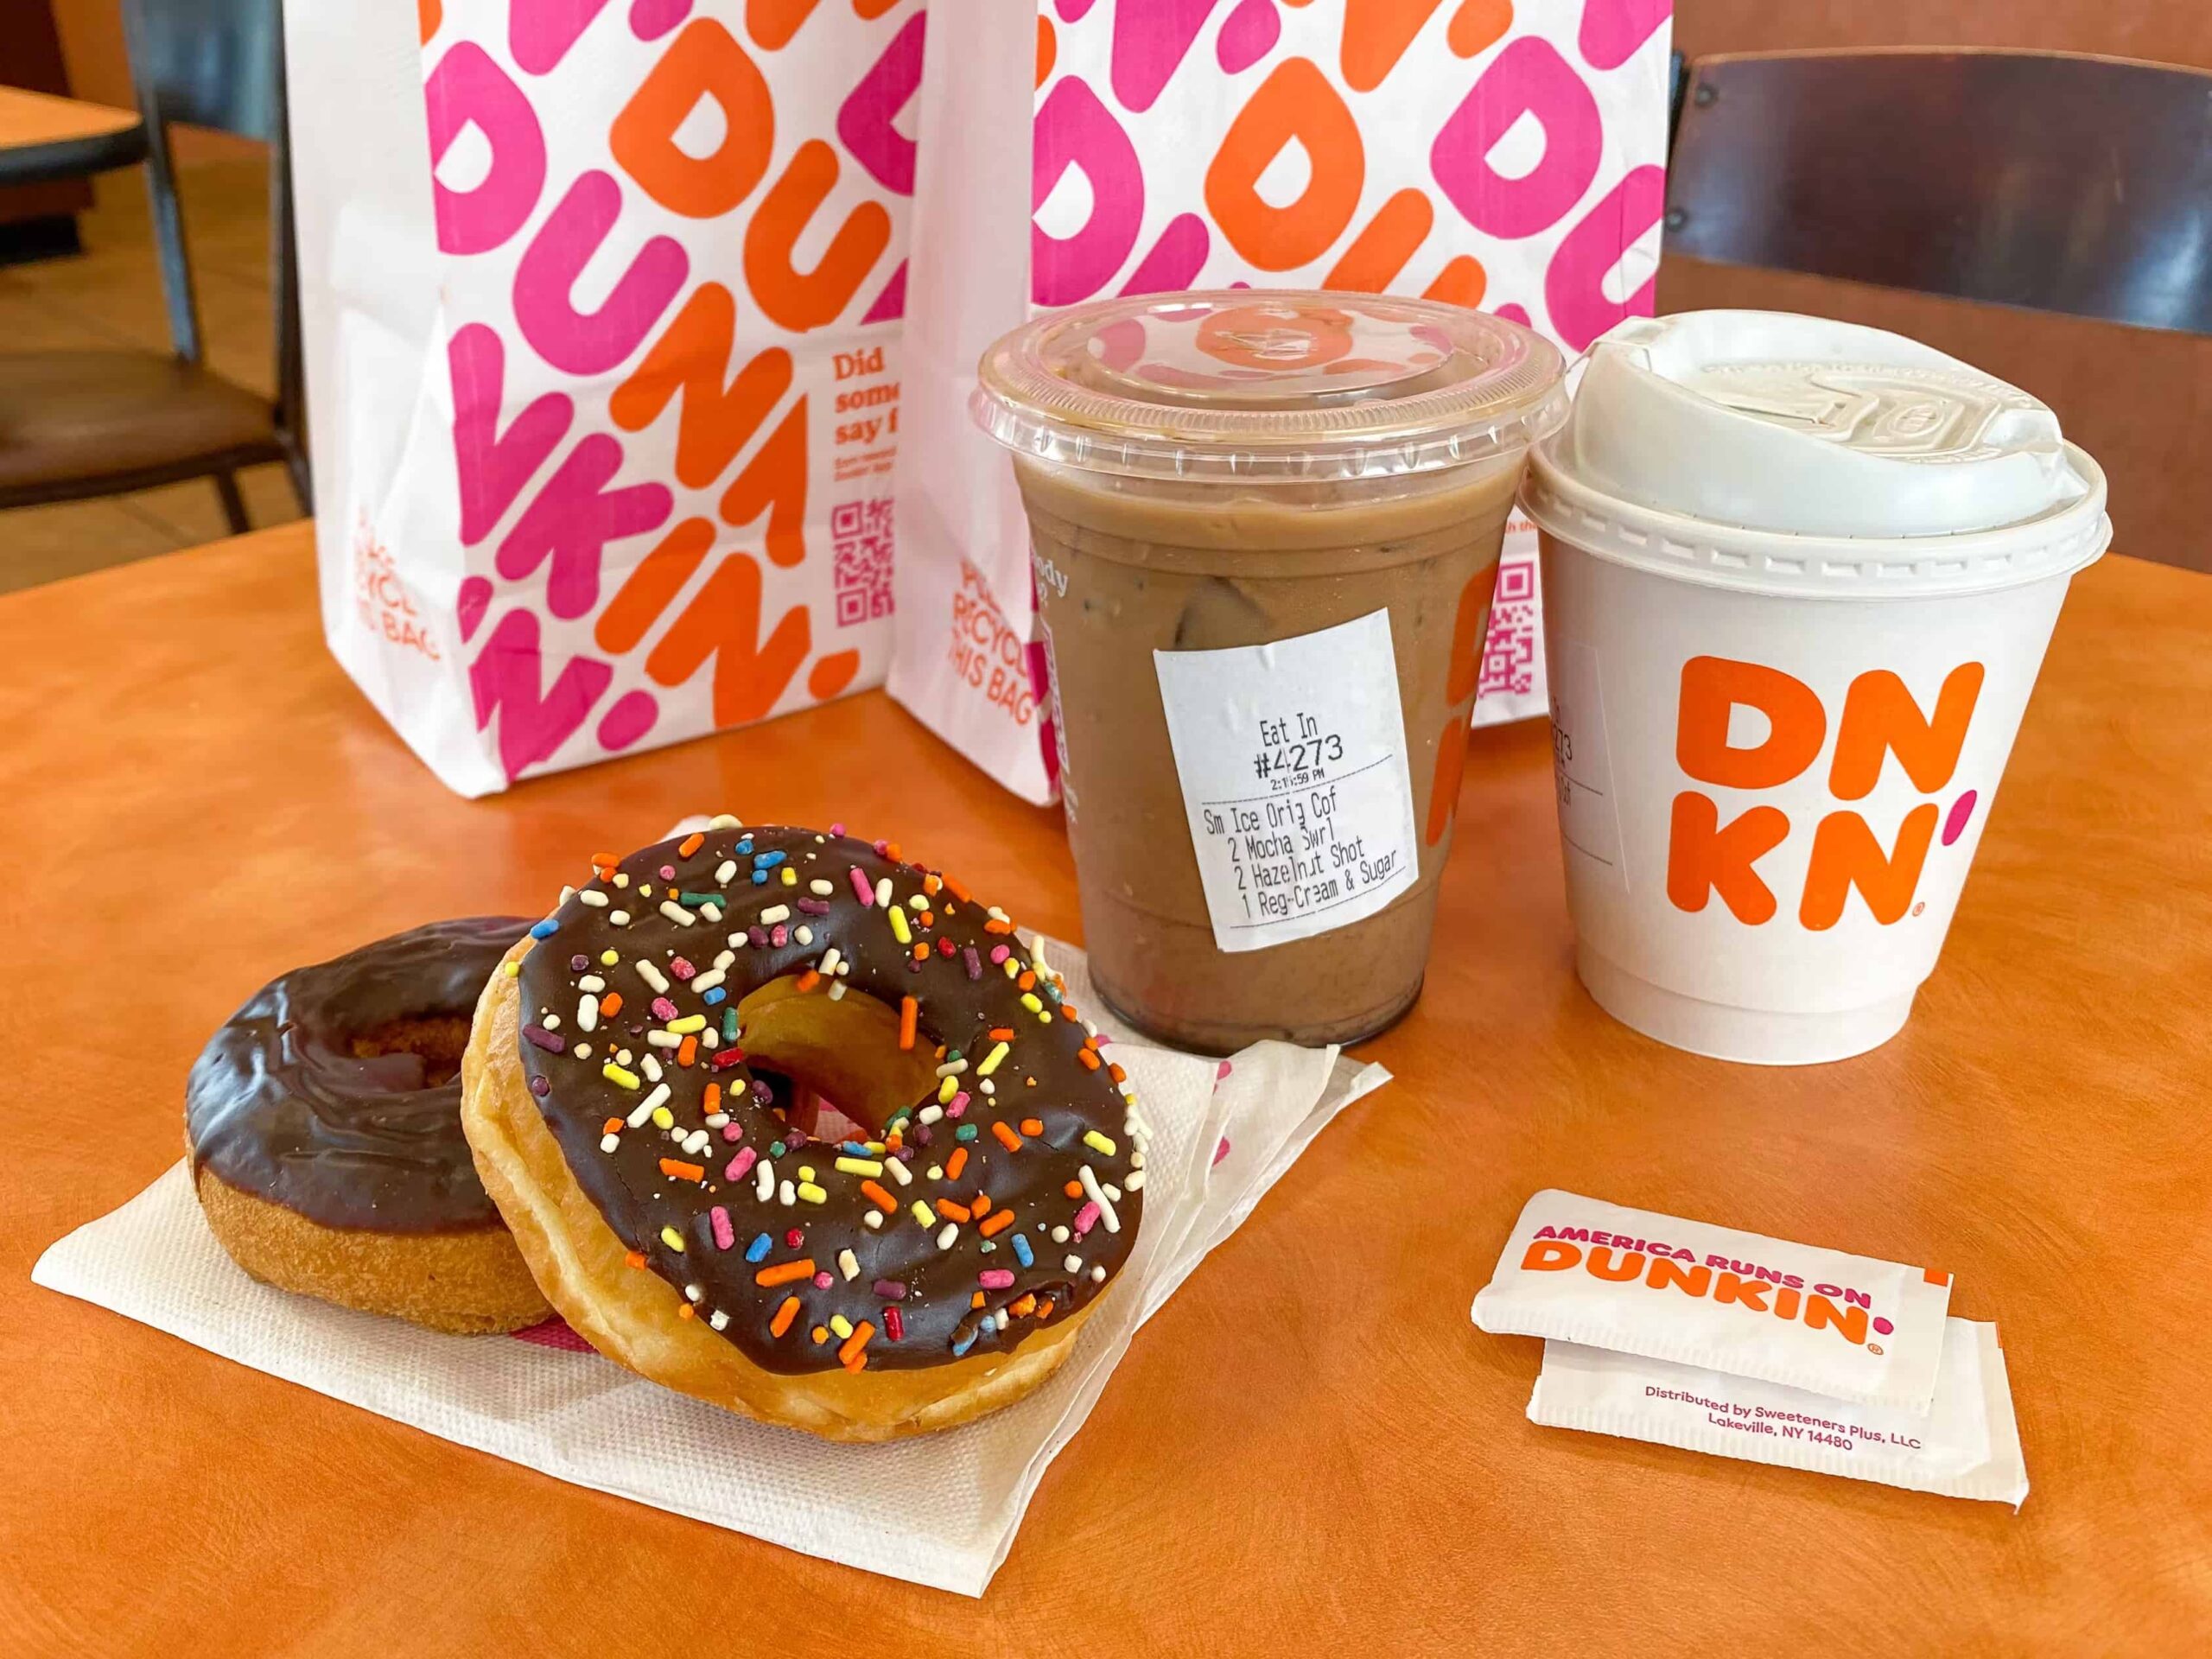 business plan for dunkin donut franchise